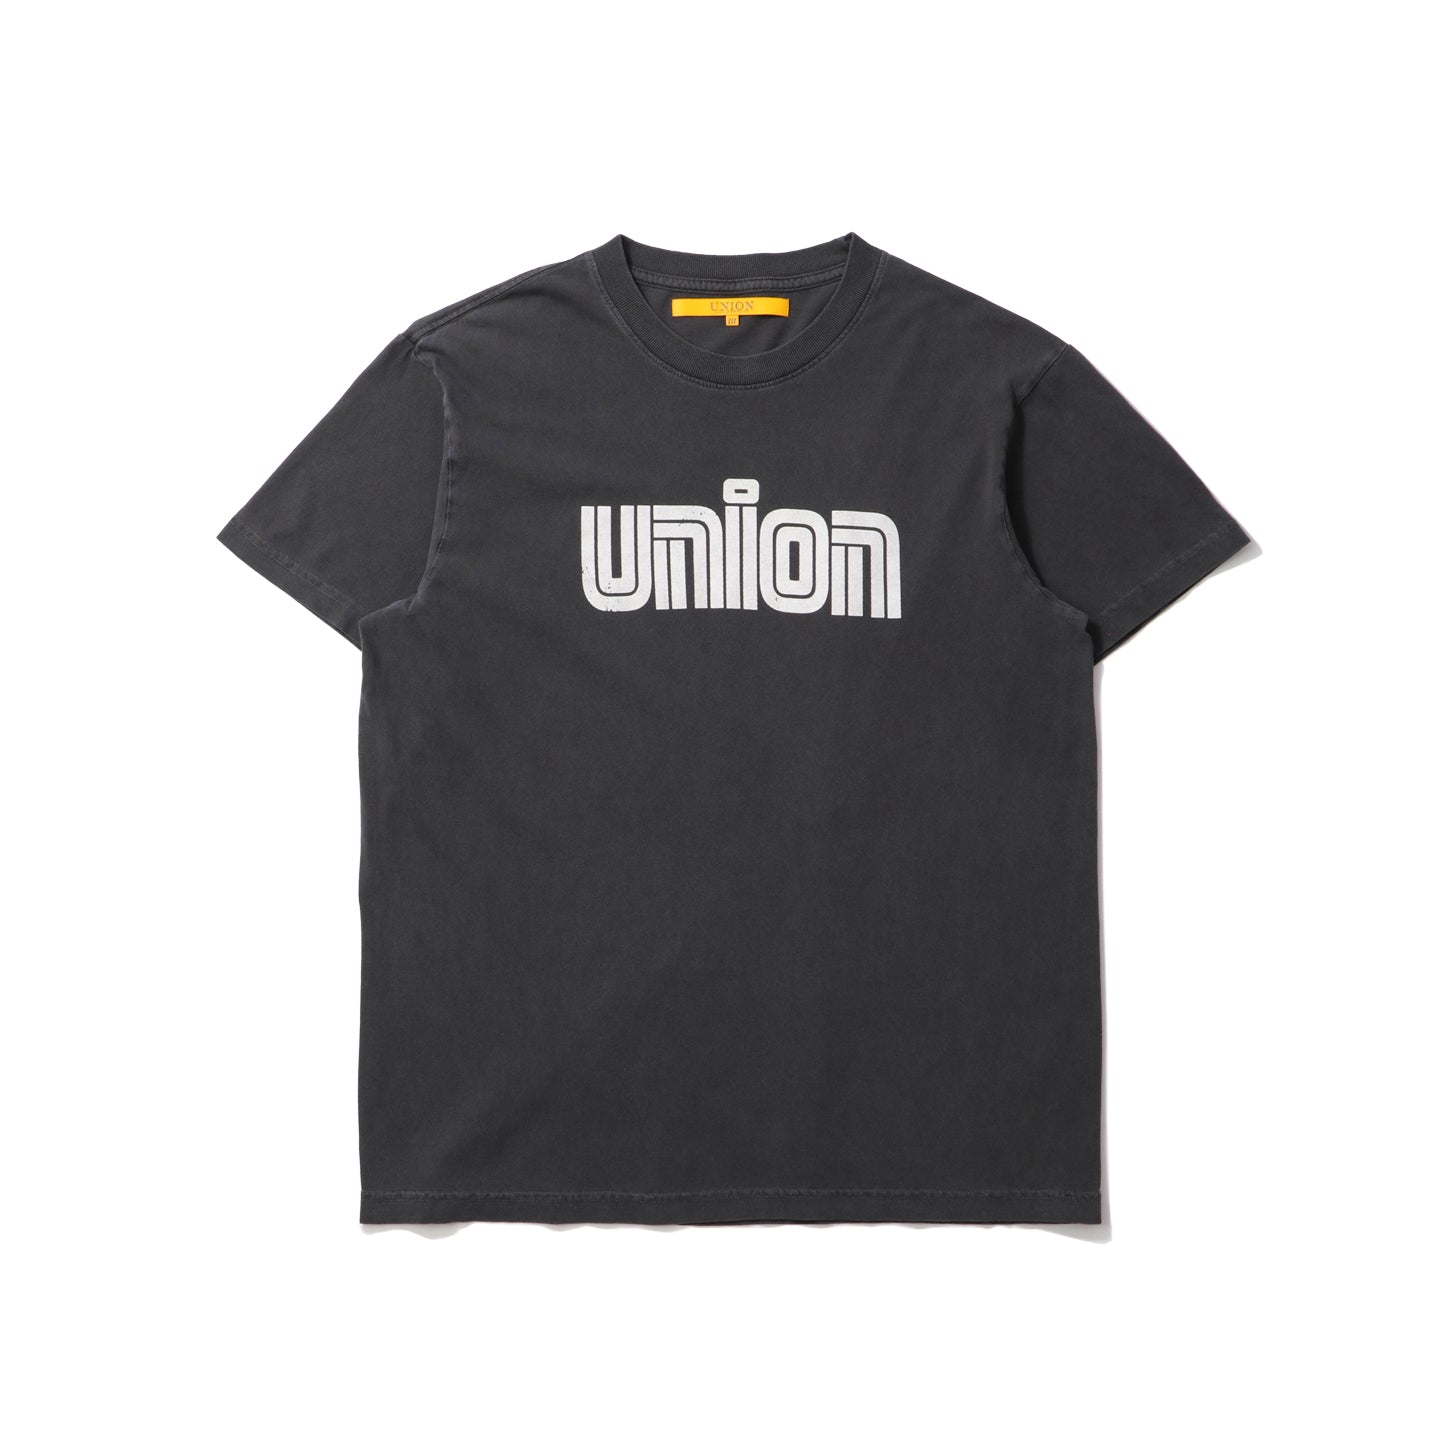 【新品】23 ELECTRIC UNION S/S TEE - WHITE - L Tシャツ 正規品 半袖